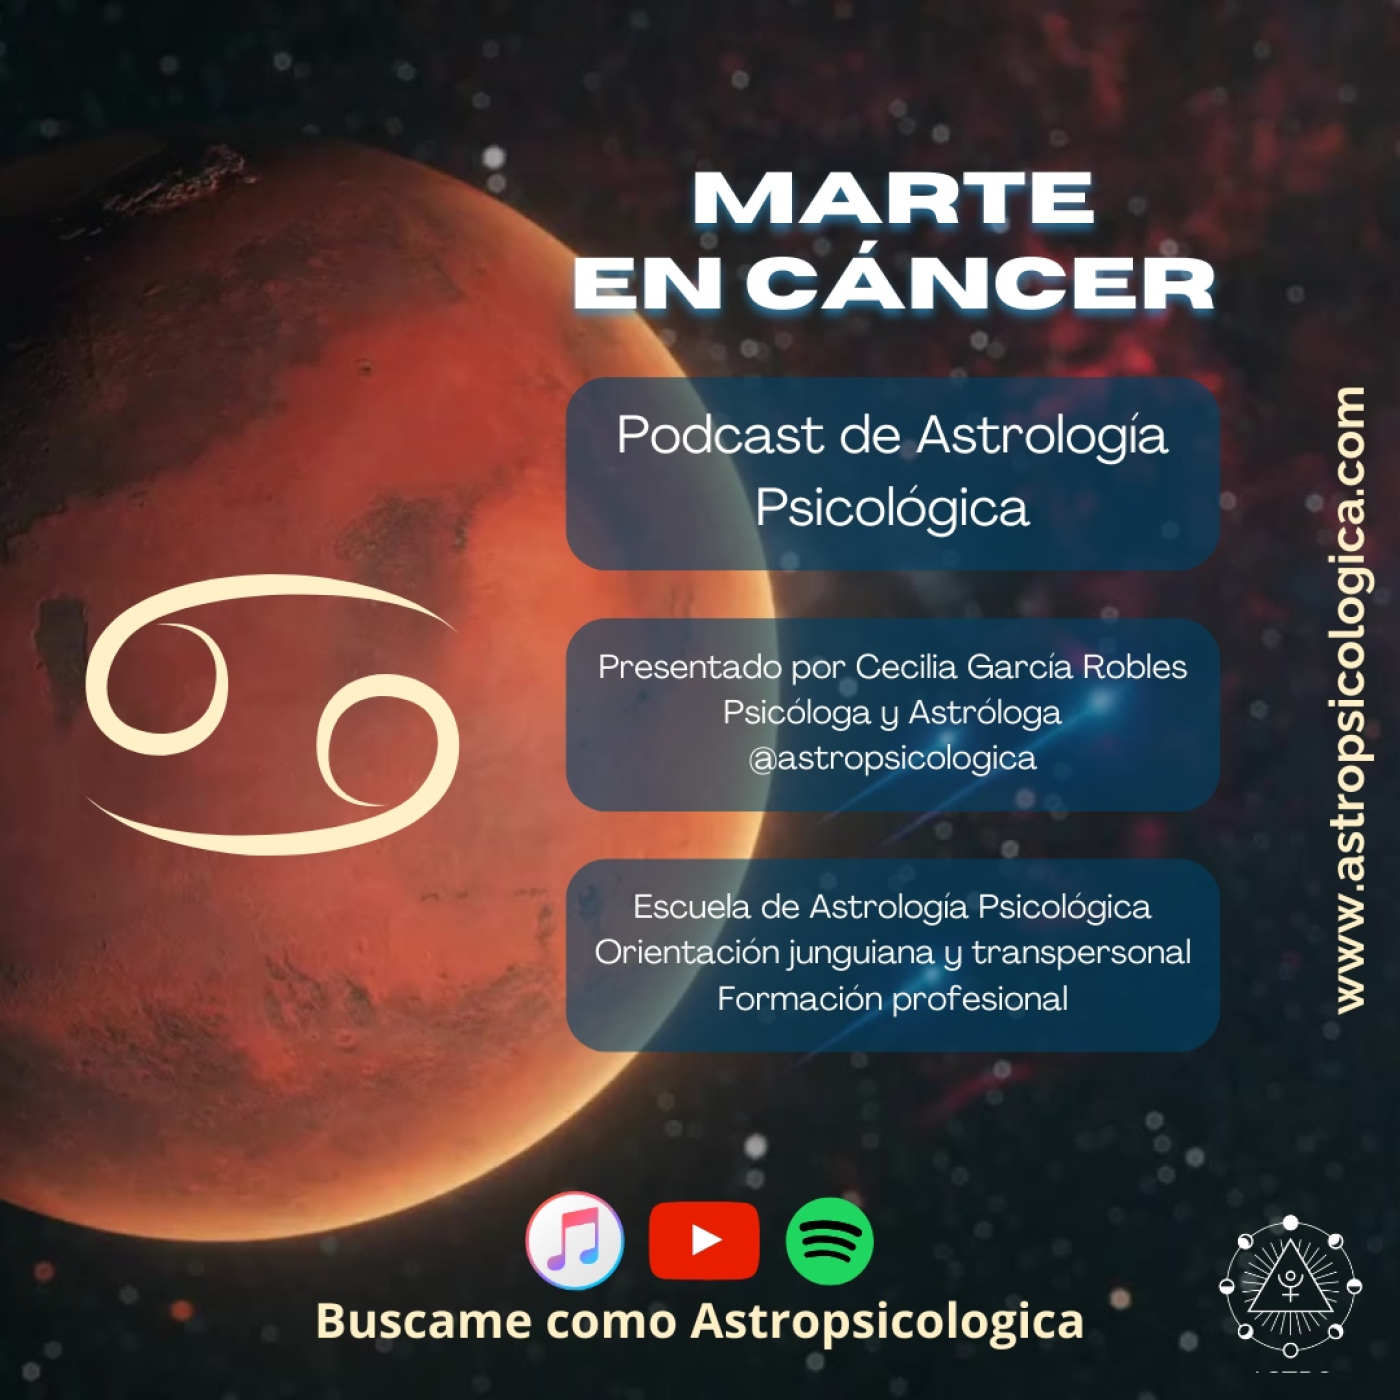 Podcast: Marte en Cáncer